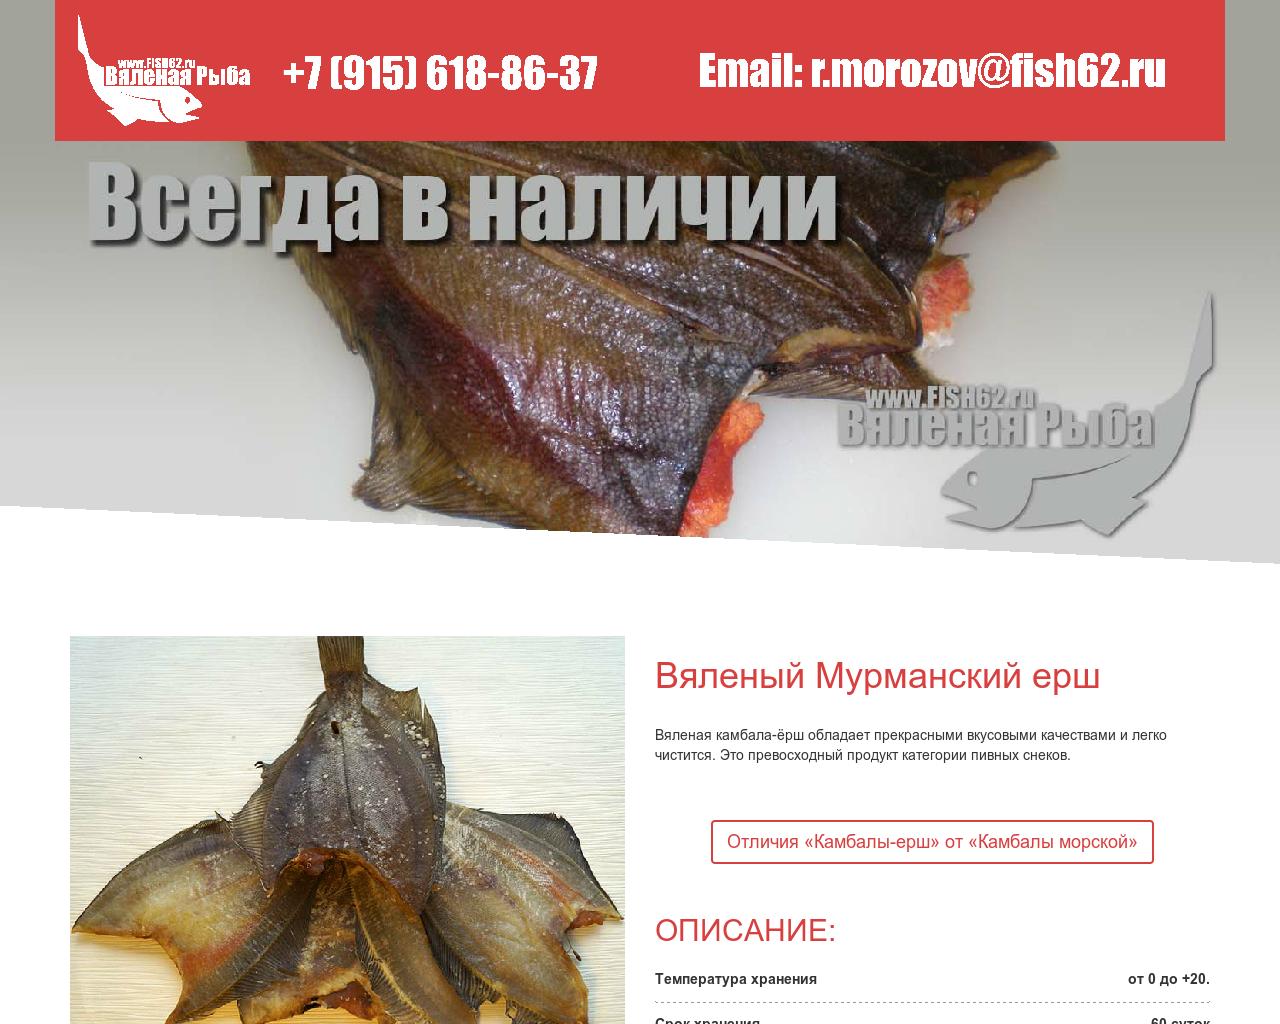 Изображение сайта fish62.ru в разрешении 1280x1024